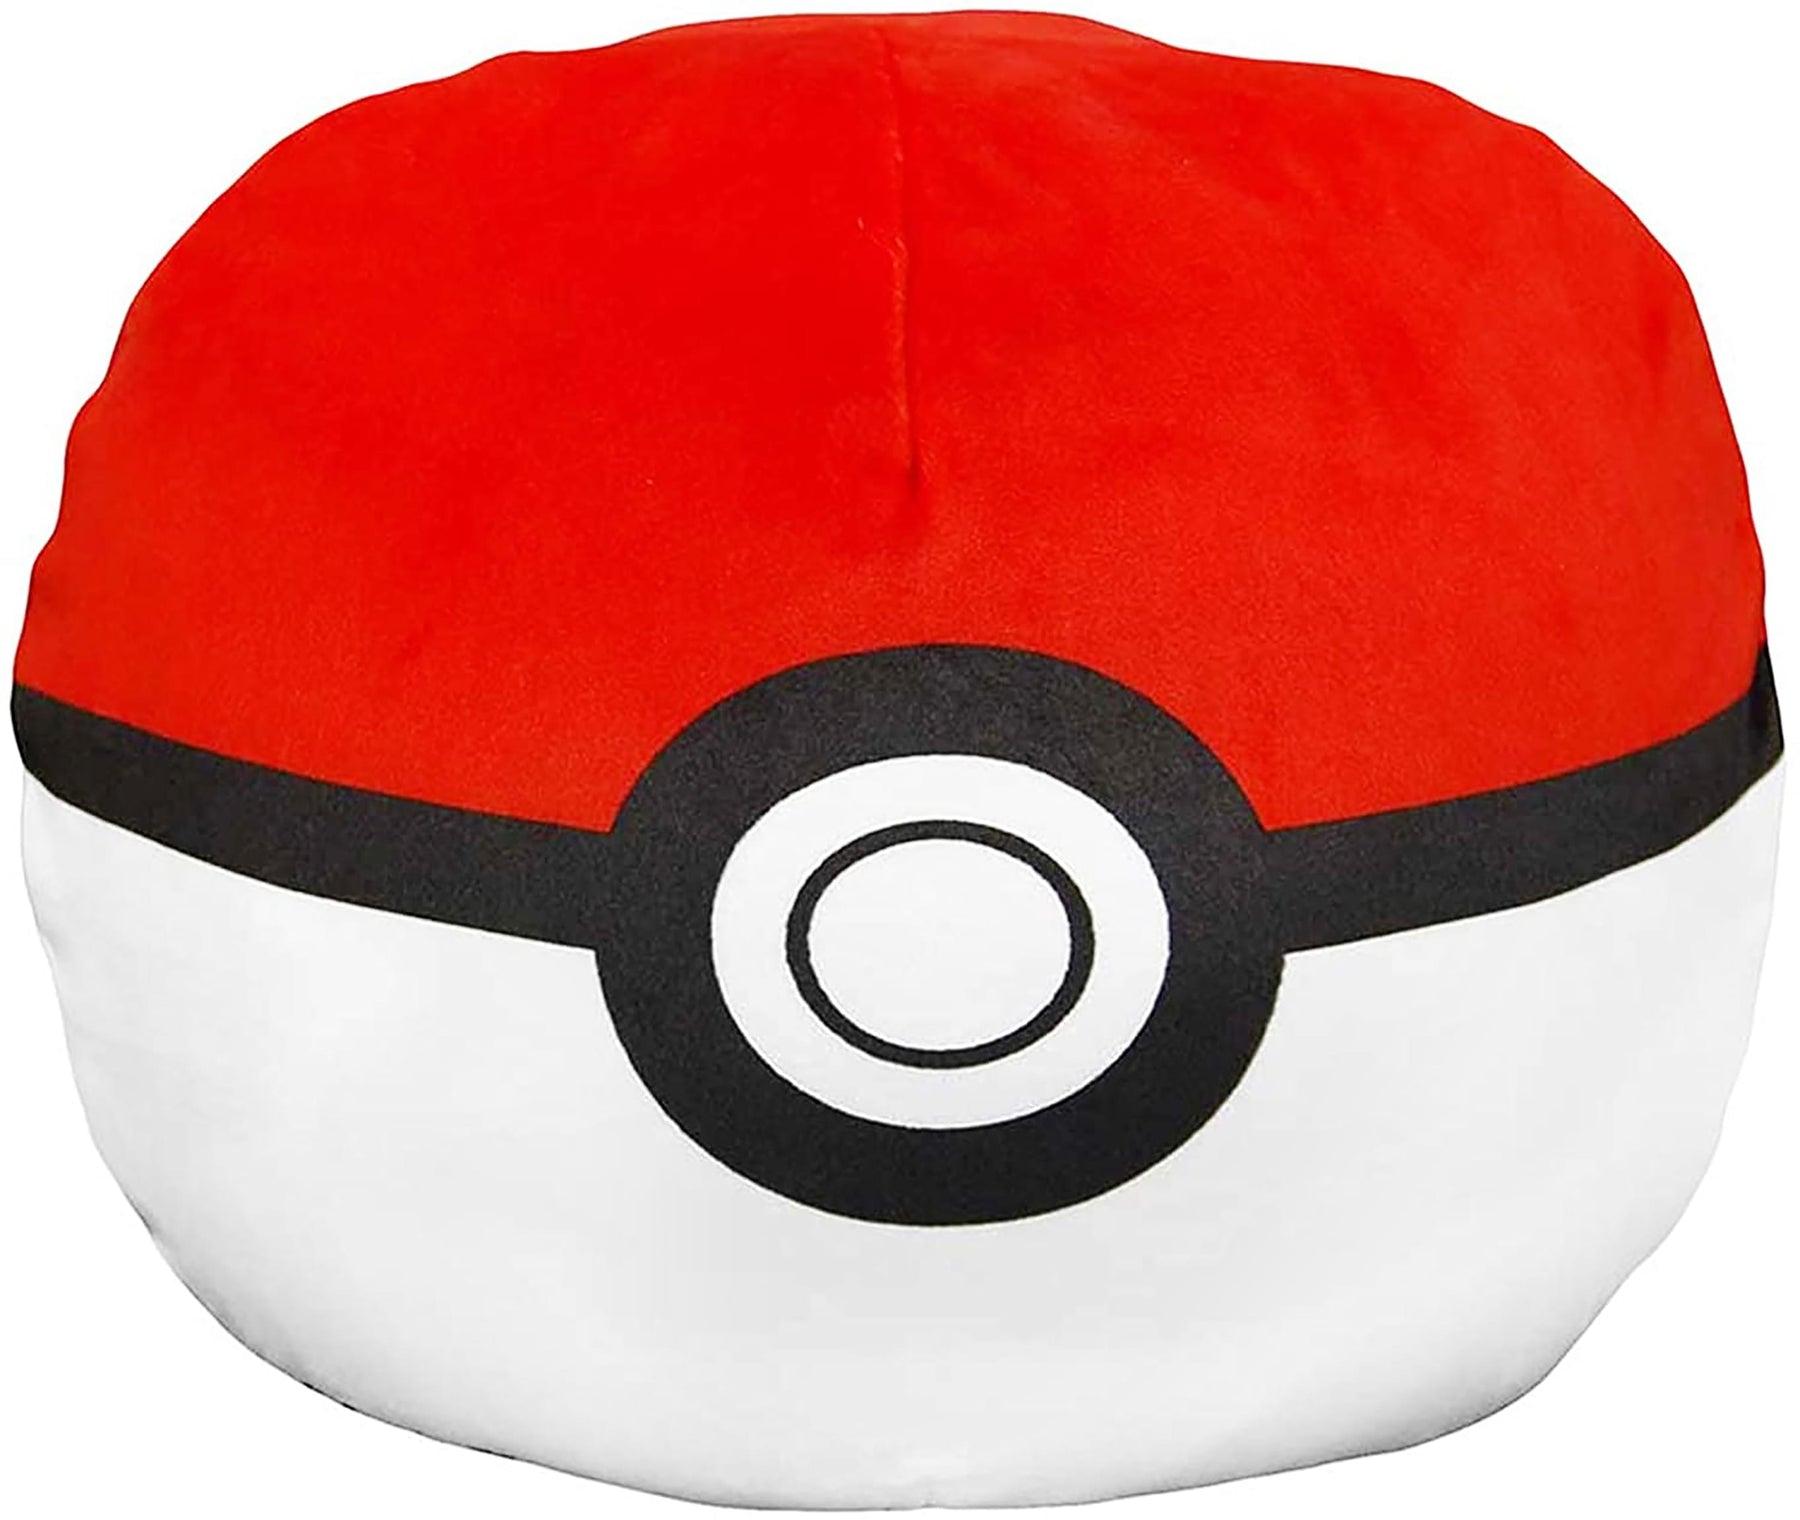 Pokemon Poke Ball 11 Inch Plush Cloud Pillow